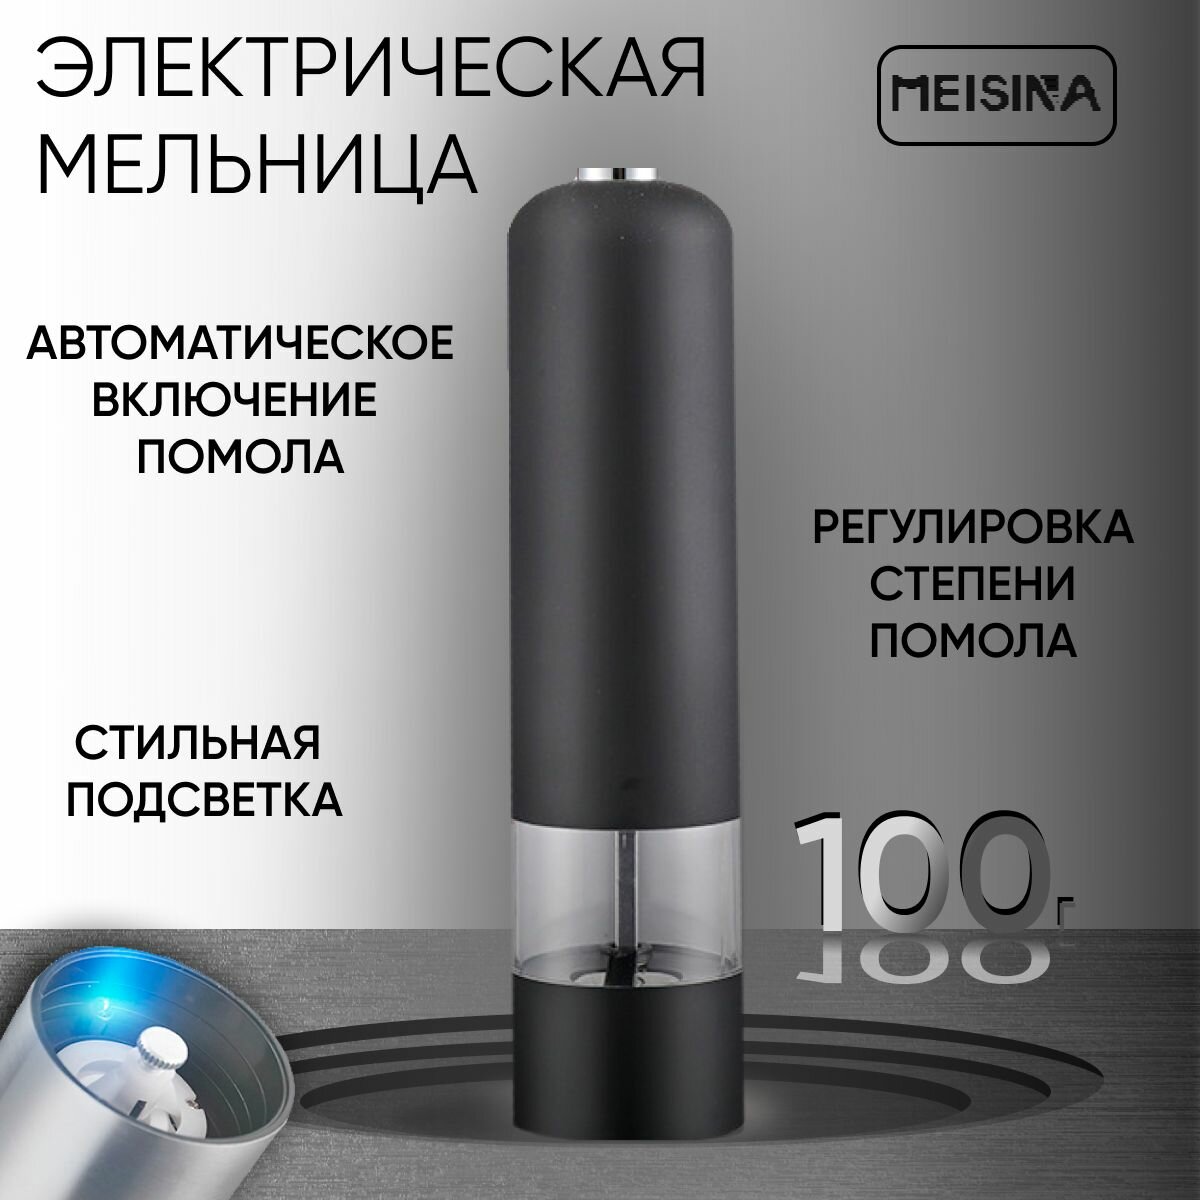 Мельница для специй электрическая с LED подсветкой, с автоматическим помолом, для перца и соли "Meisina". Электромельница металлическая, черная.